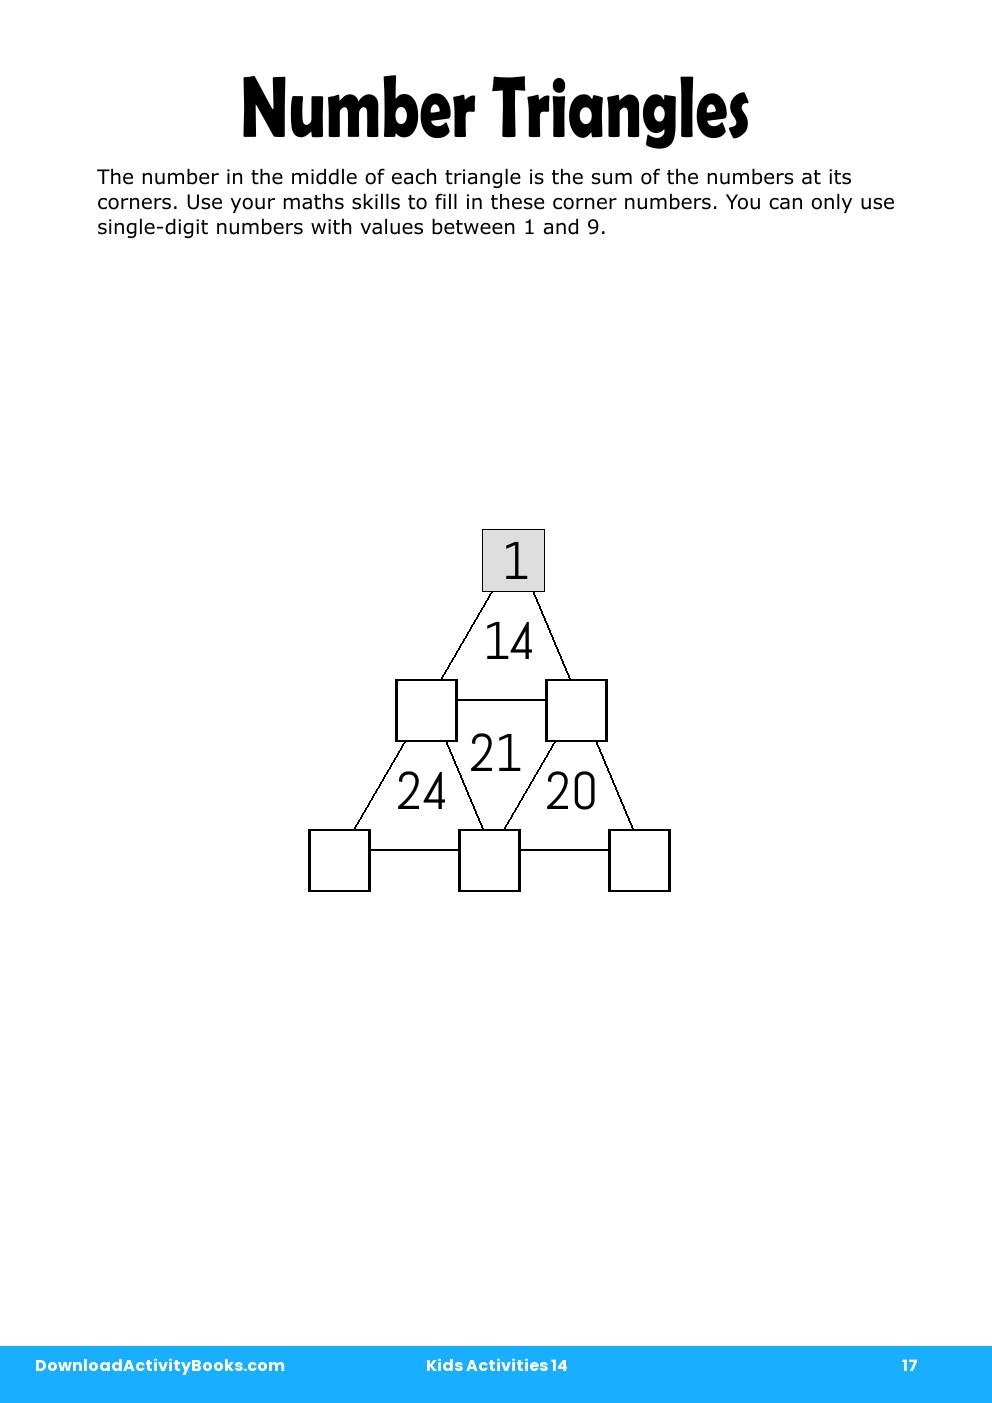 Number Triangles in Kids Activities 14